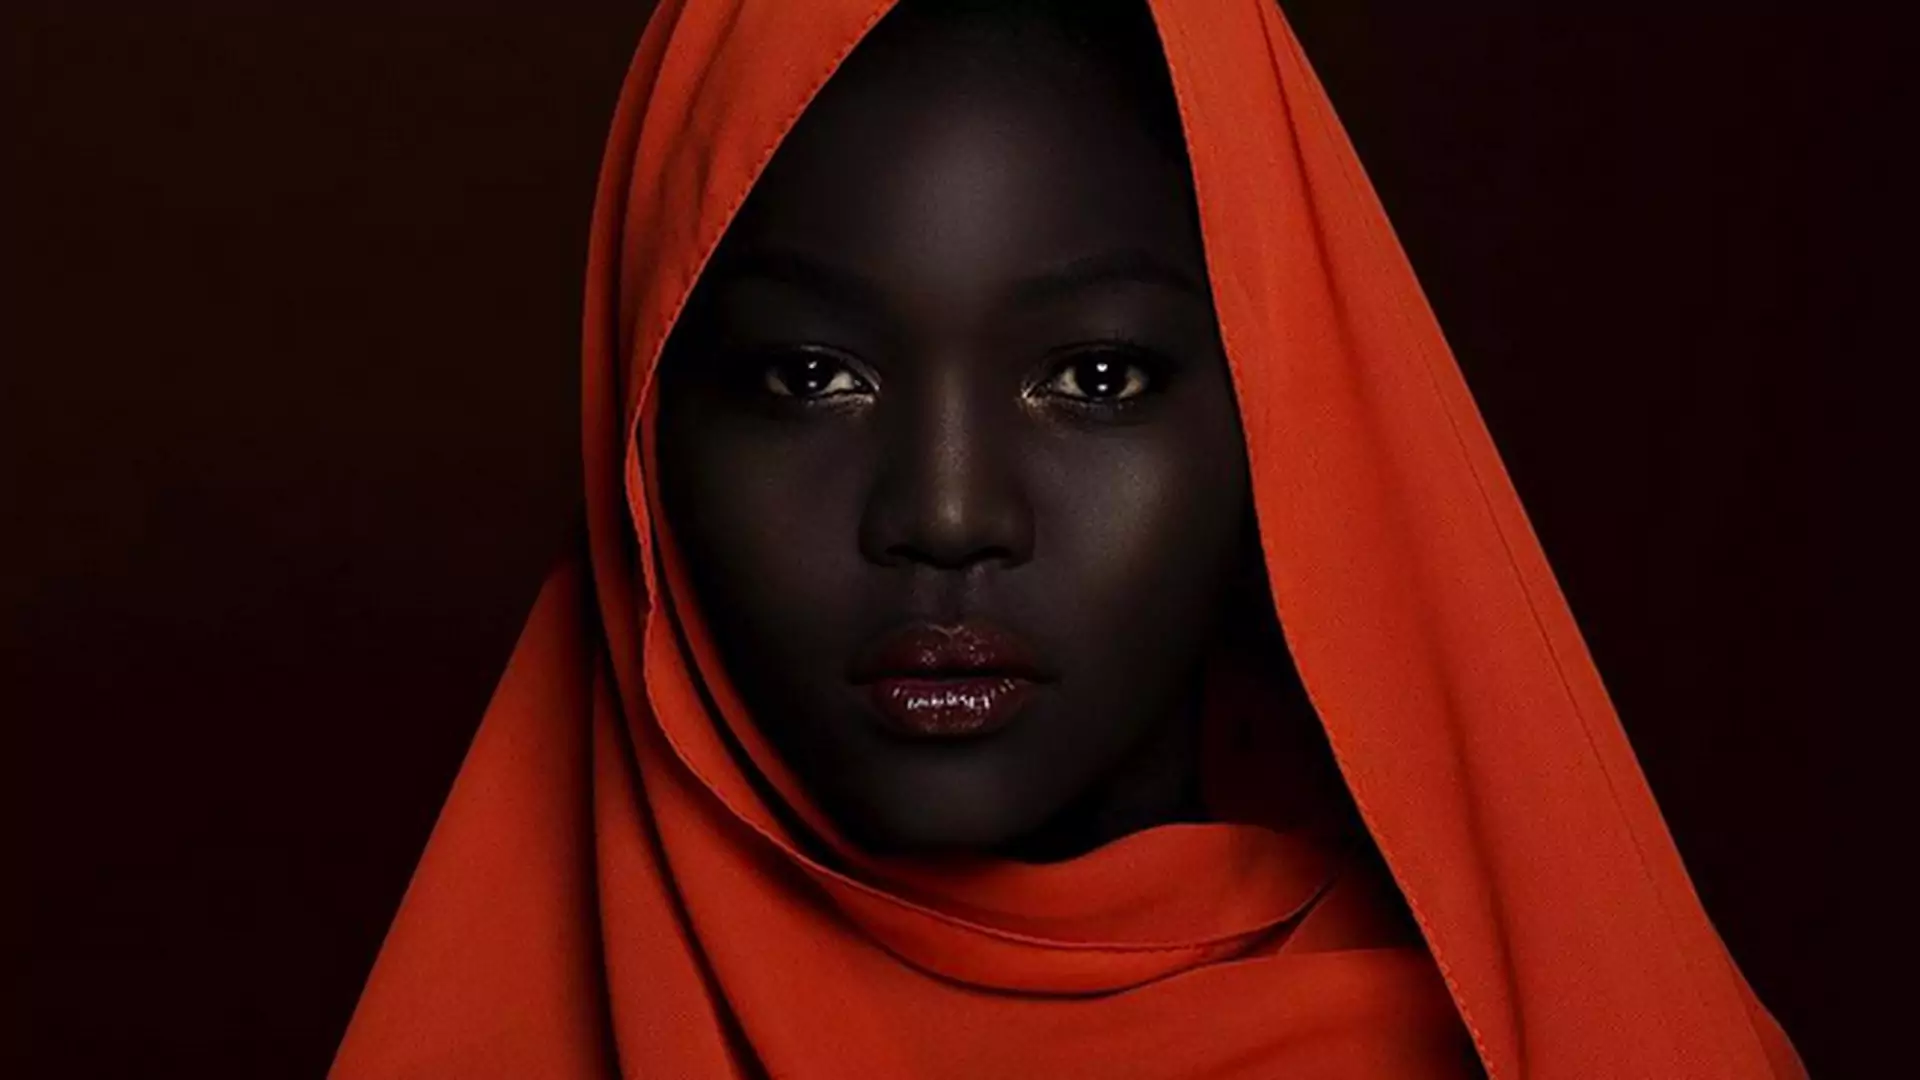 "Królowa ciemności" - przepiękna modelka z Sudanu pokazuje, jak kochać siebie